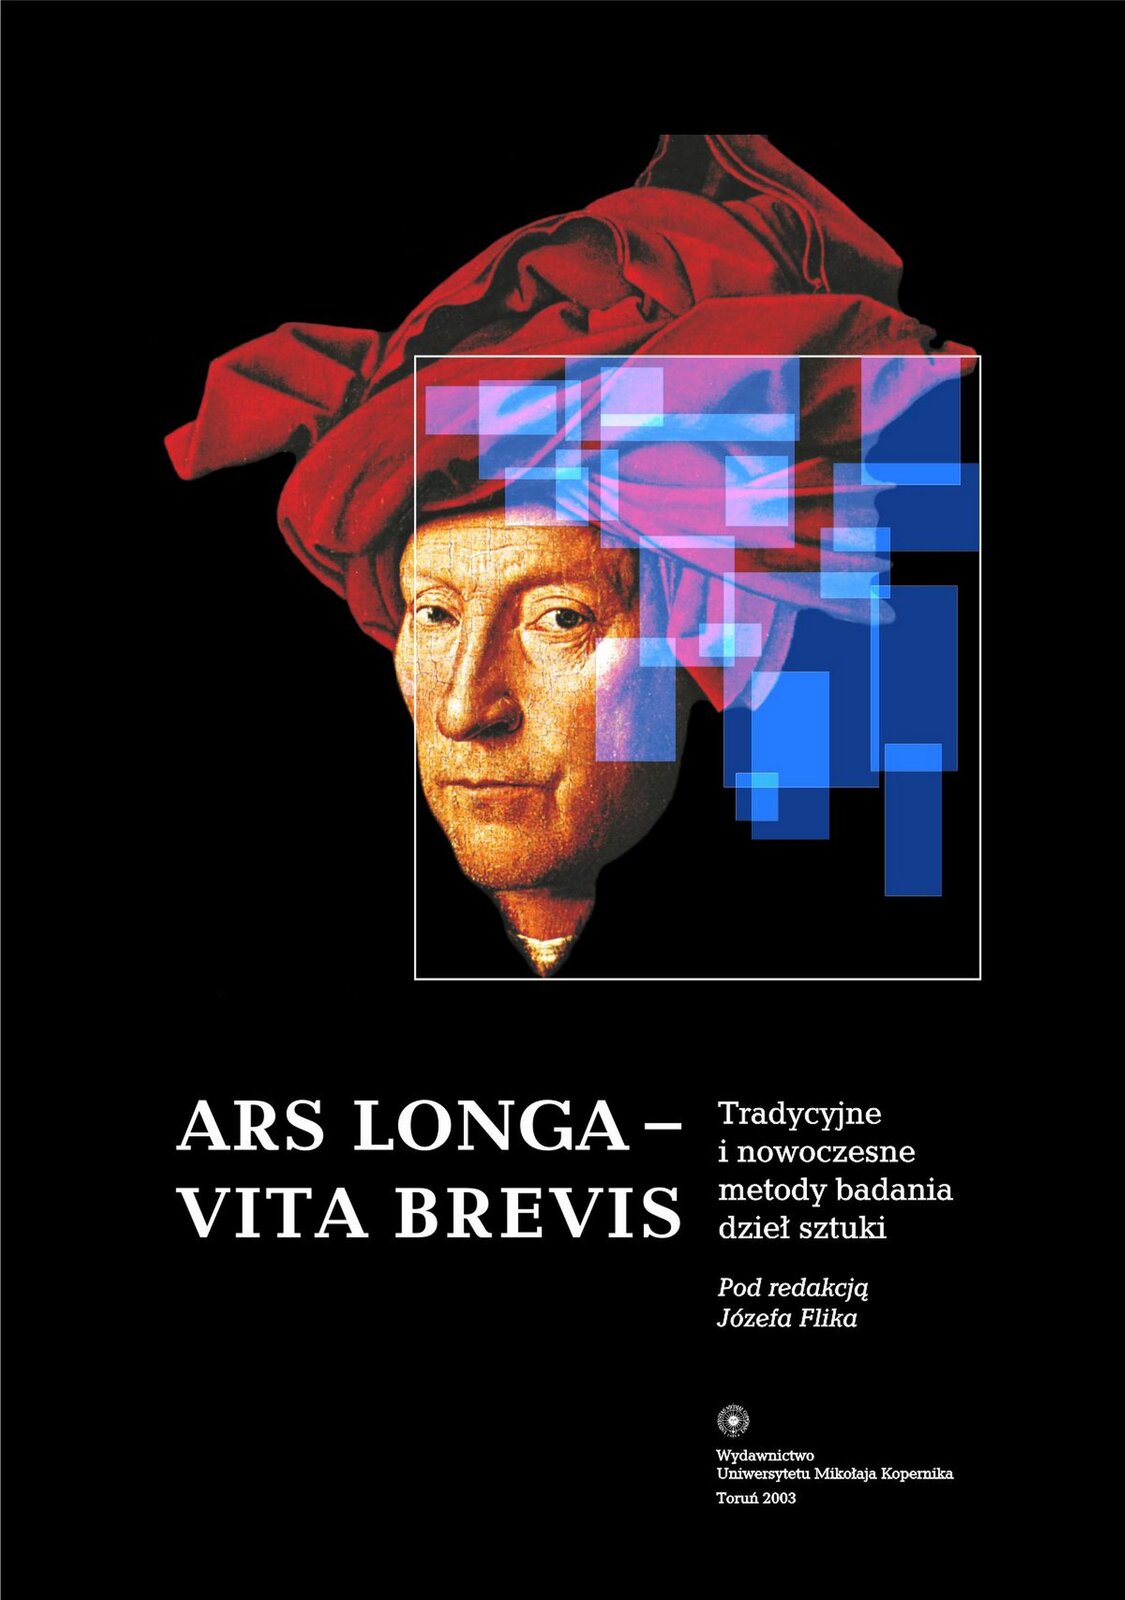 Ilustracja przedstawia okładkę publikacji naukowej. Na czarnym tle widzimy głowę mężczyzny, w czerwonym turbanie. Mężczyzna patrzy na widza. Na portrecie zamieszczony jest prostokąt z białą obwódką, w którym znajdują się nałożone transparentne, niebieskie prostokąty, nałożone na siebie. Pod portretem znajduje się tytuł publikacji: ARS LONGA‑VITA BREVIS oraz tekst: „Tradycyjne i nowoczesne metody badania dzieł sztuki. Pod redakcją Józefa Flika”. Poniżej natomiast nazwa wydawnictwa i rok wydania: „Uniwersytet Mikołaja Kopernika 2003”.